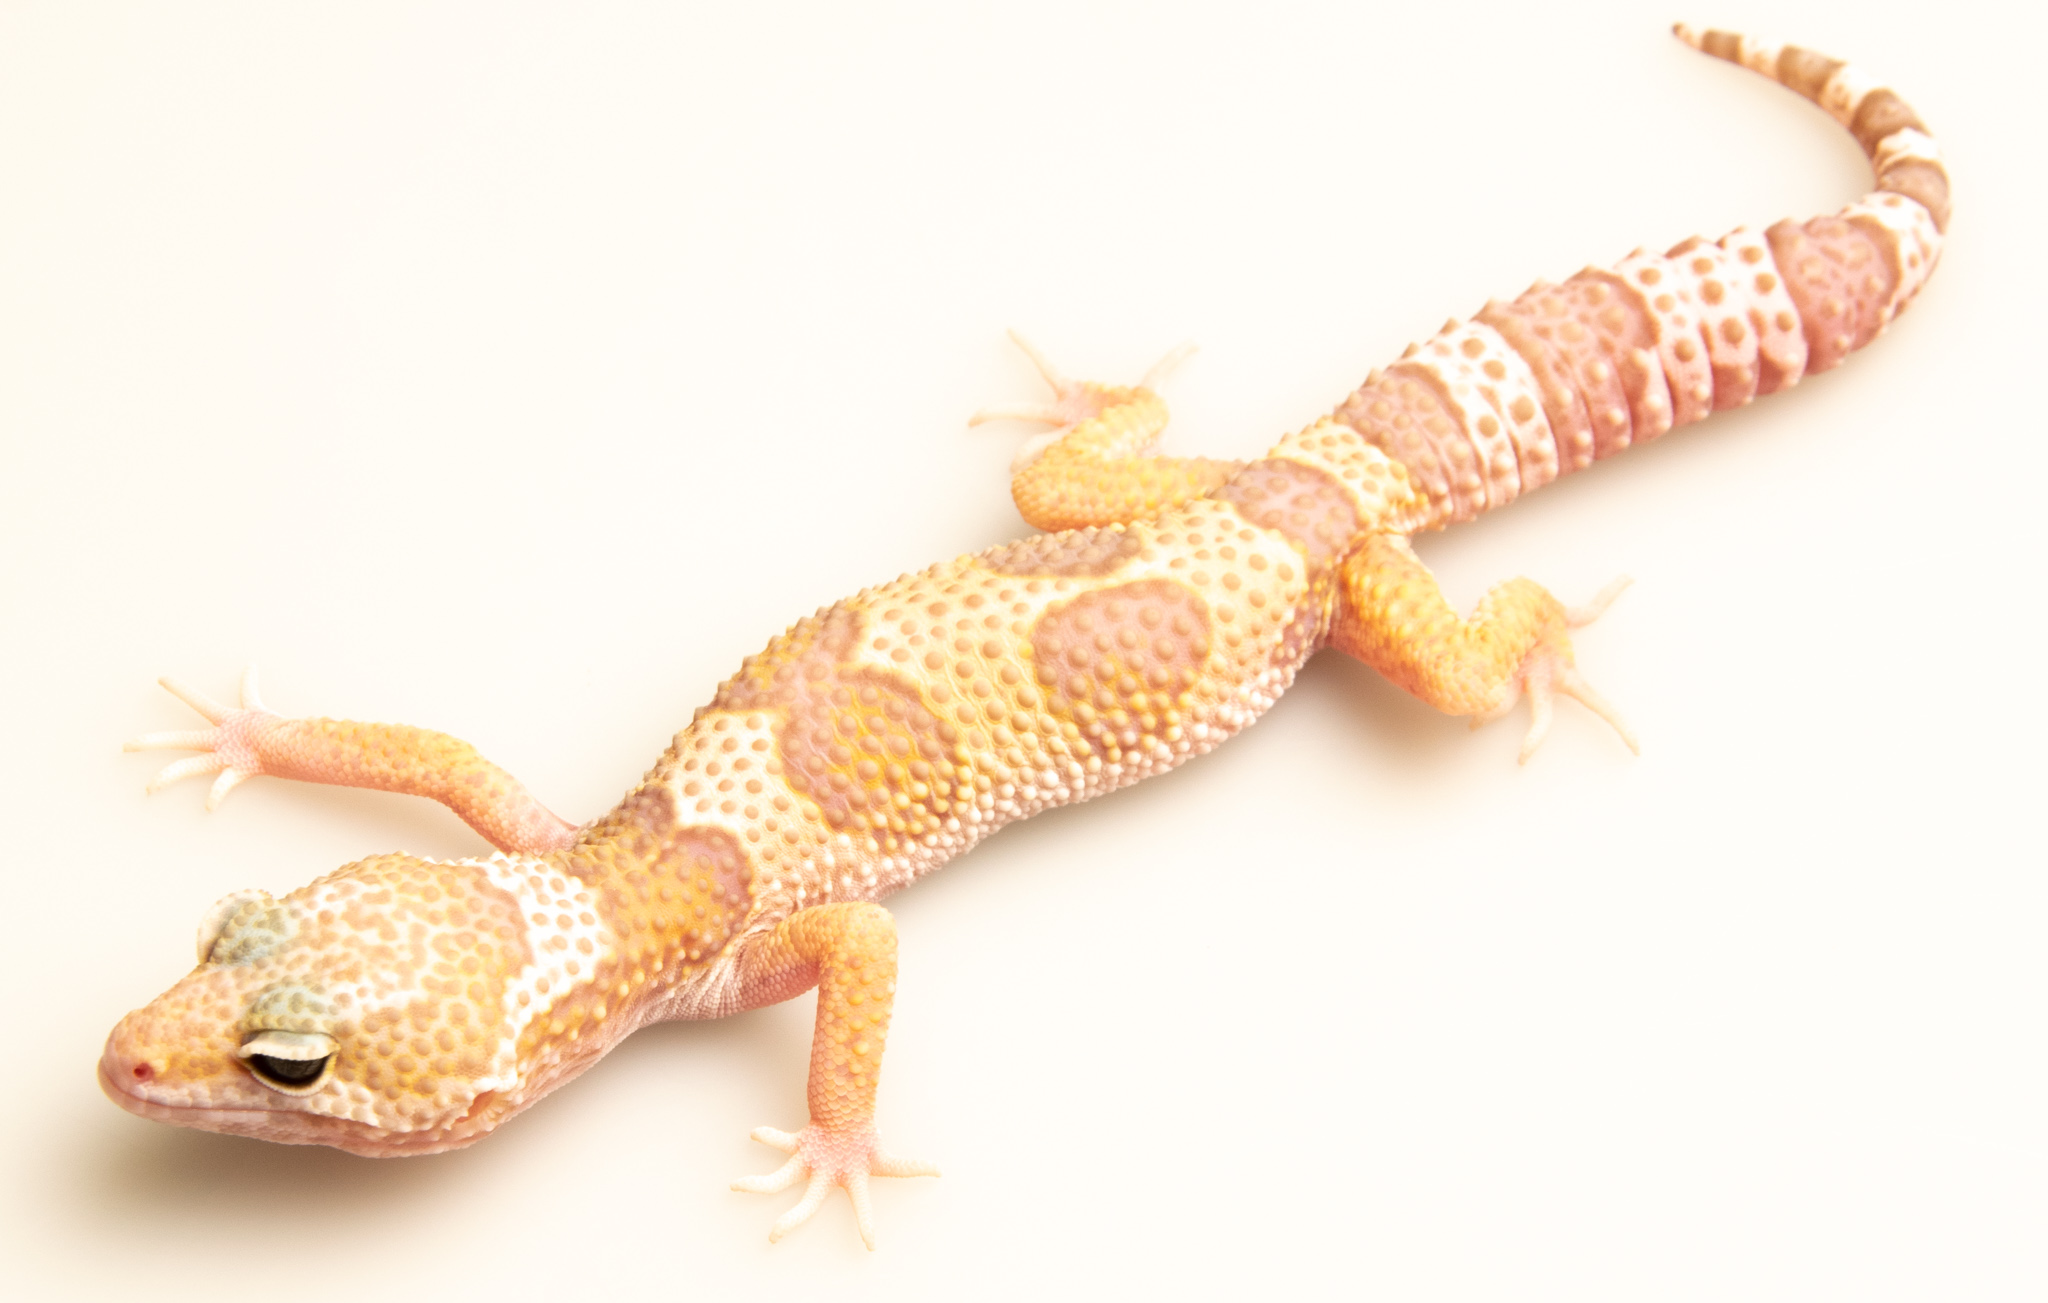 EJ101 - Gecko Léopard - Eublepharis Macularius Mack Snow Tremper - non sexé  - NC 2021